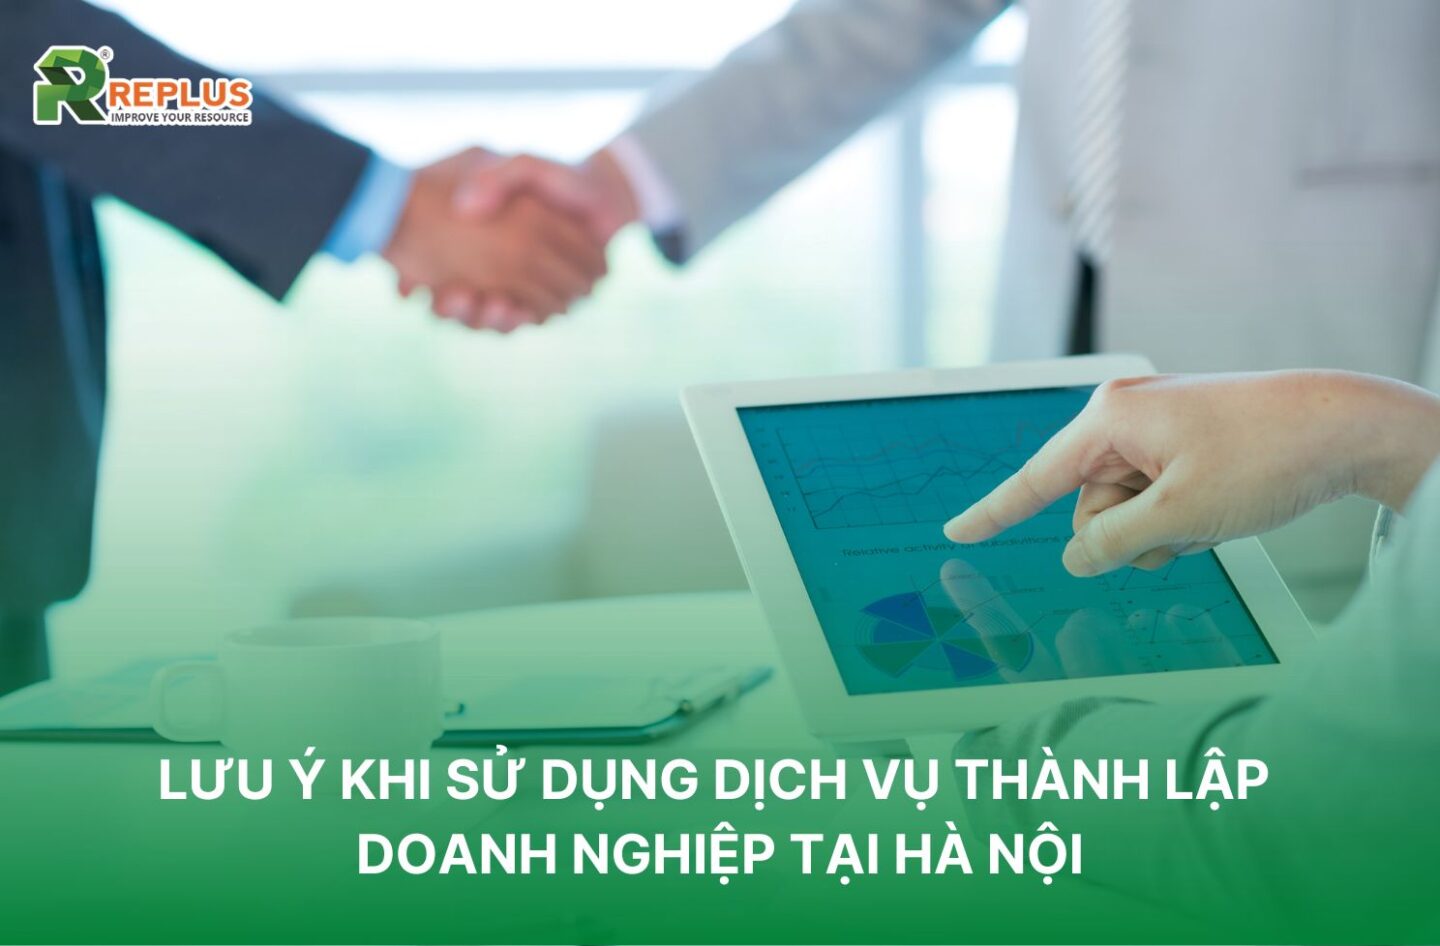 Lưu ý khi sử dụng dịch vụ thành lập doanh nghiệp tại Hà Nội